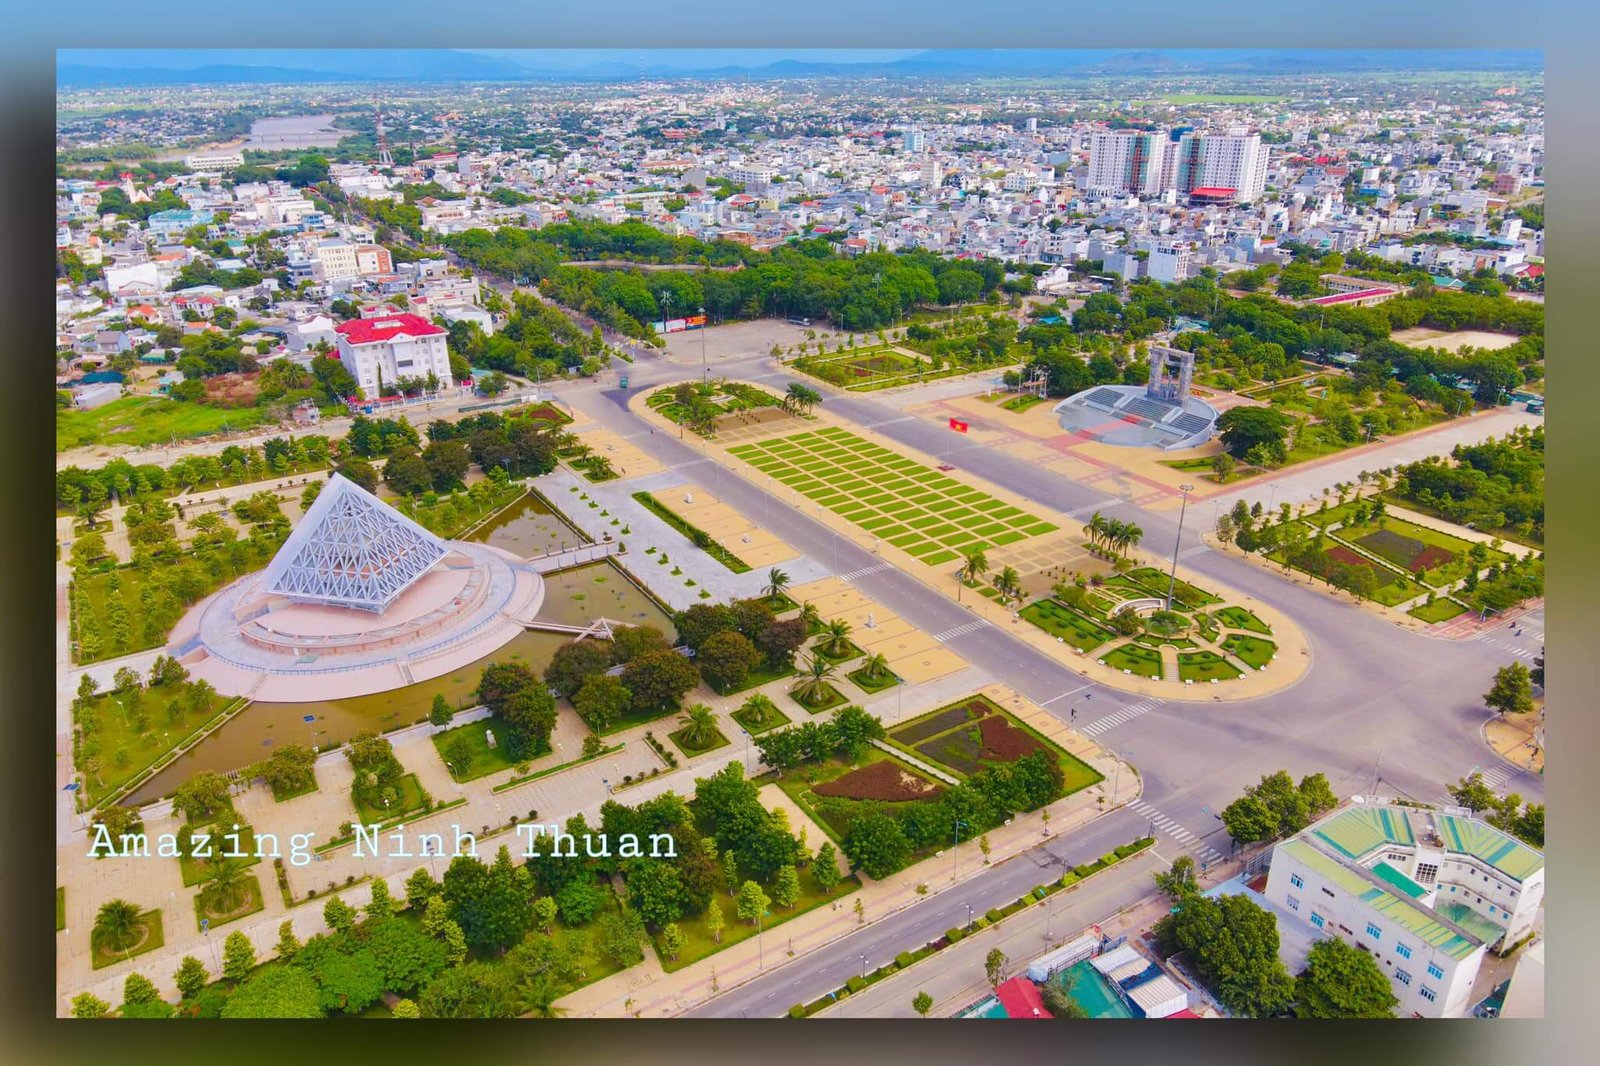 Thành phố trẻ Phan Rang - tỉnh lụy của Ninh Thuận [Ảnh: Trần Phương Trình]